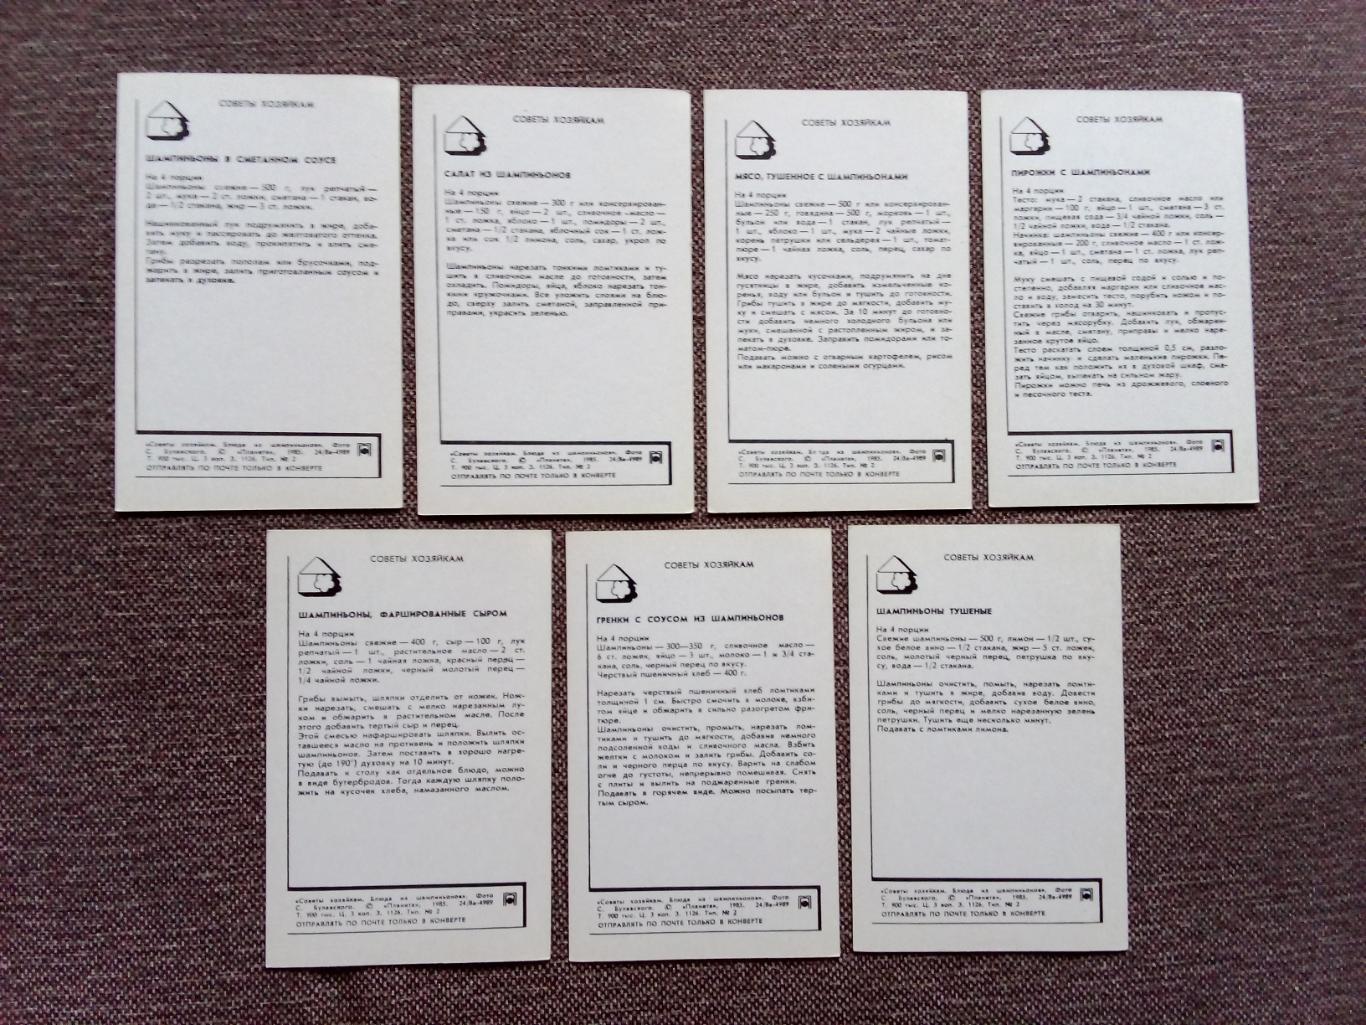 Советы хозяйкам - Блюда из шампиньонов 1985 г. полный набор - 15 открыток 7